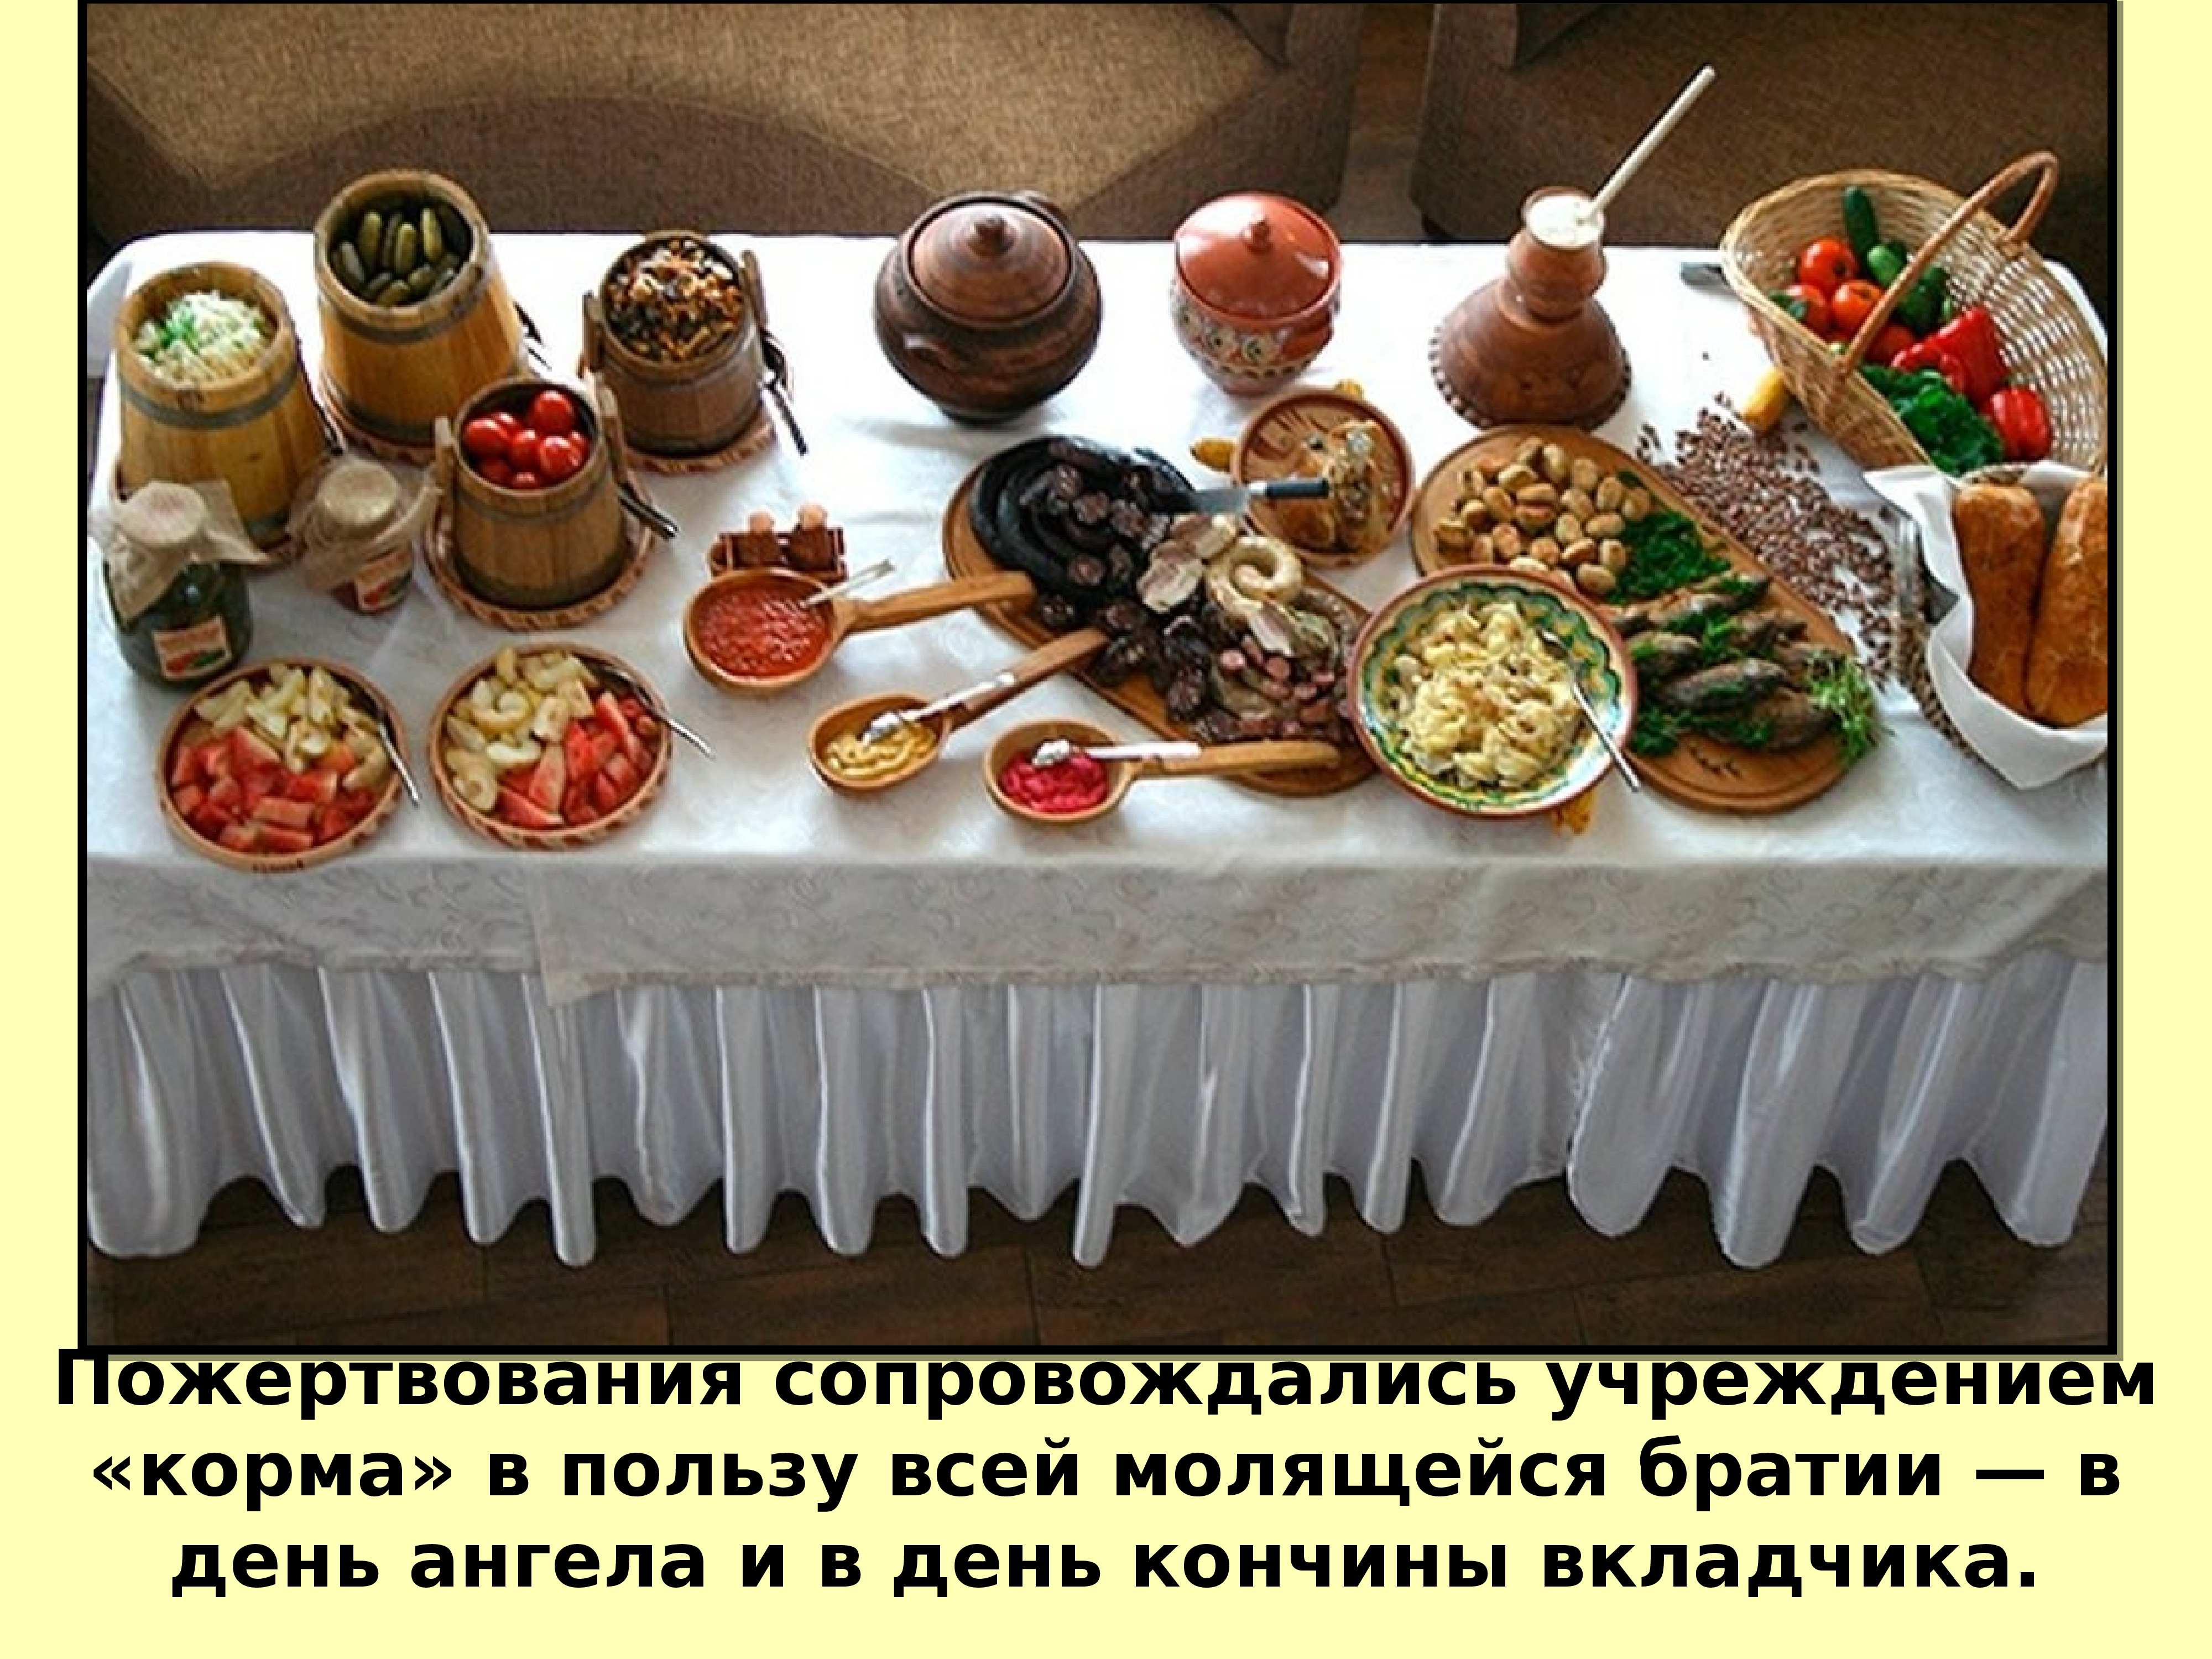 Накрыть стол в русском стиле